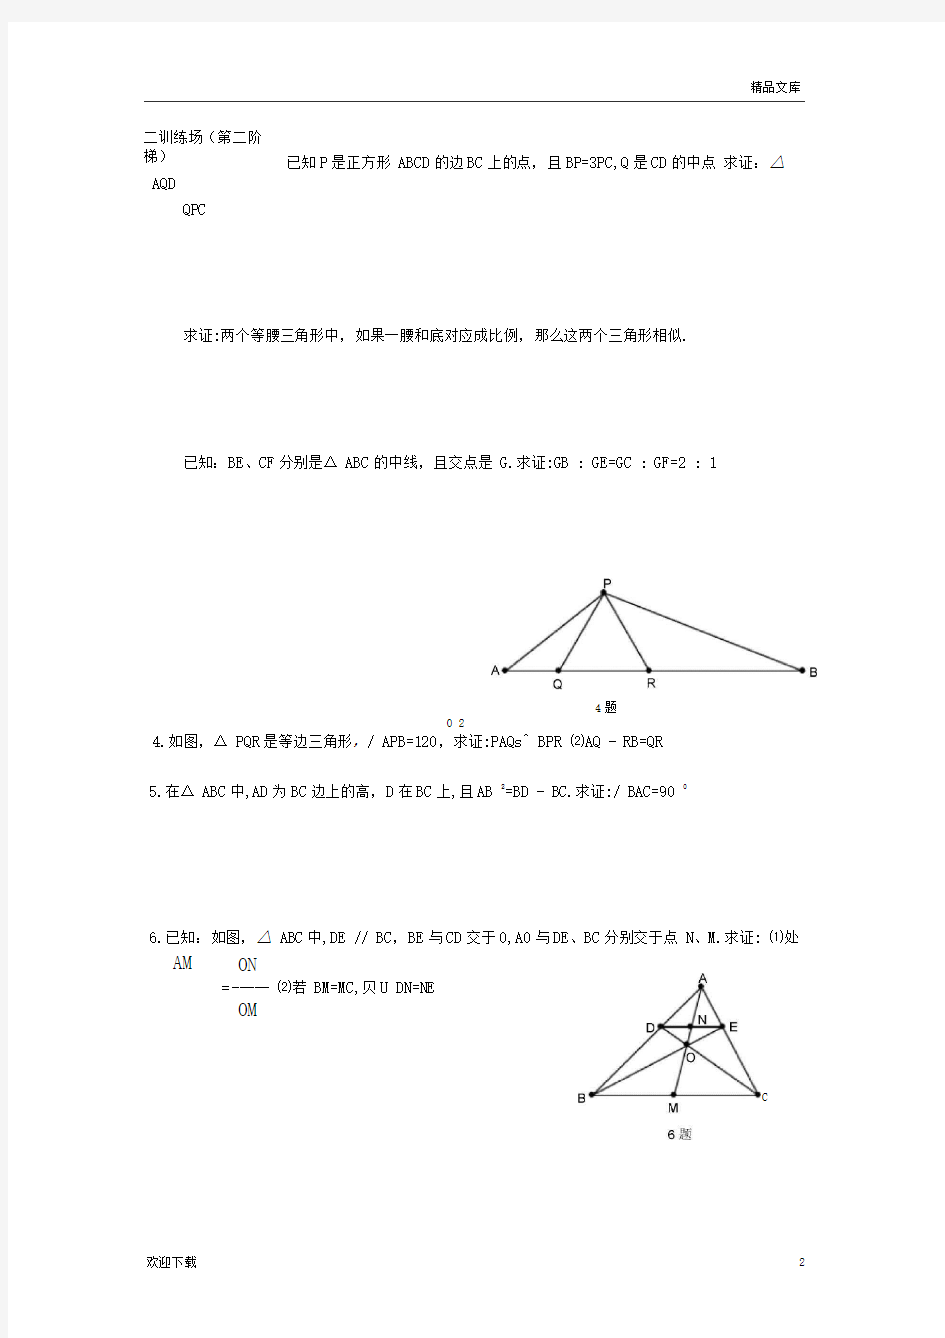 相似三角形基础训练题(一)